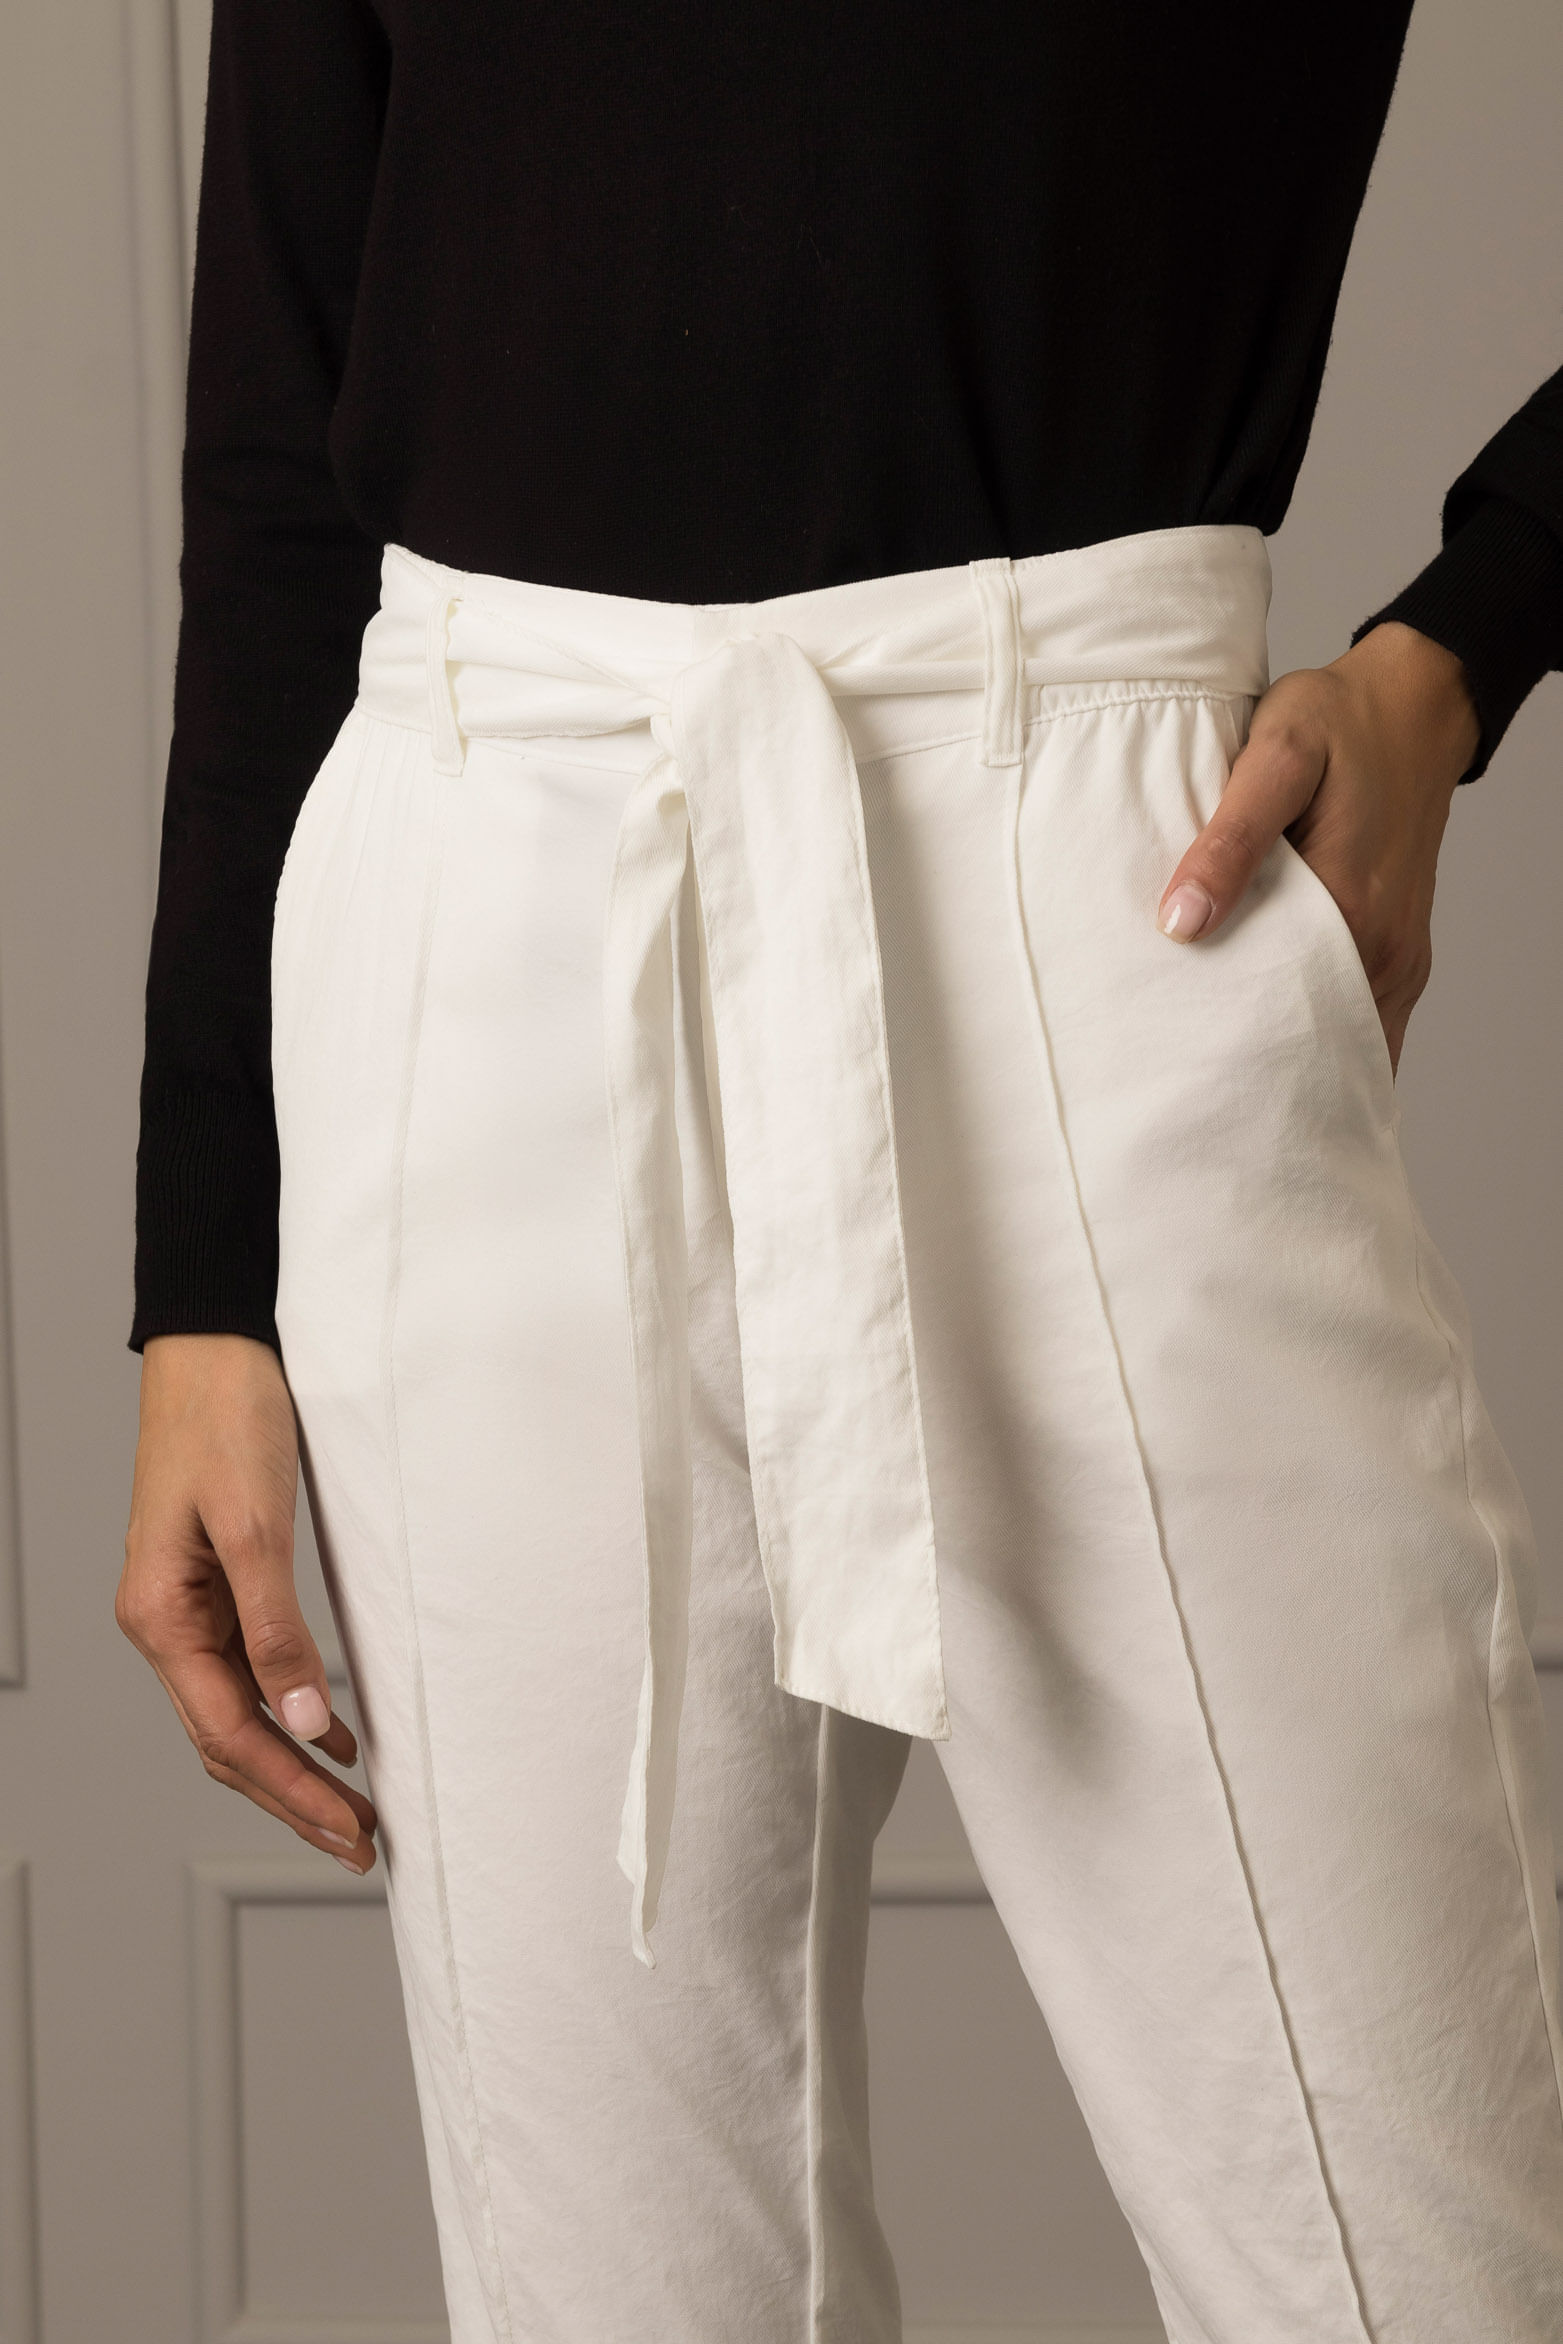 Pantalón minium mujer tiro alto Blanco |